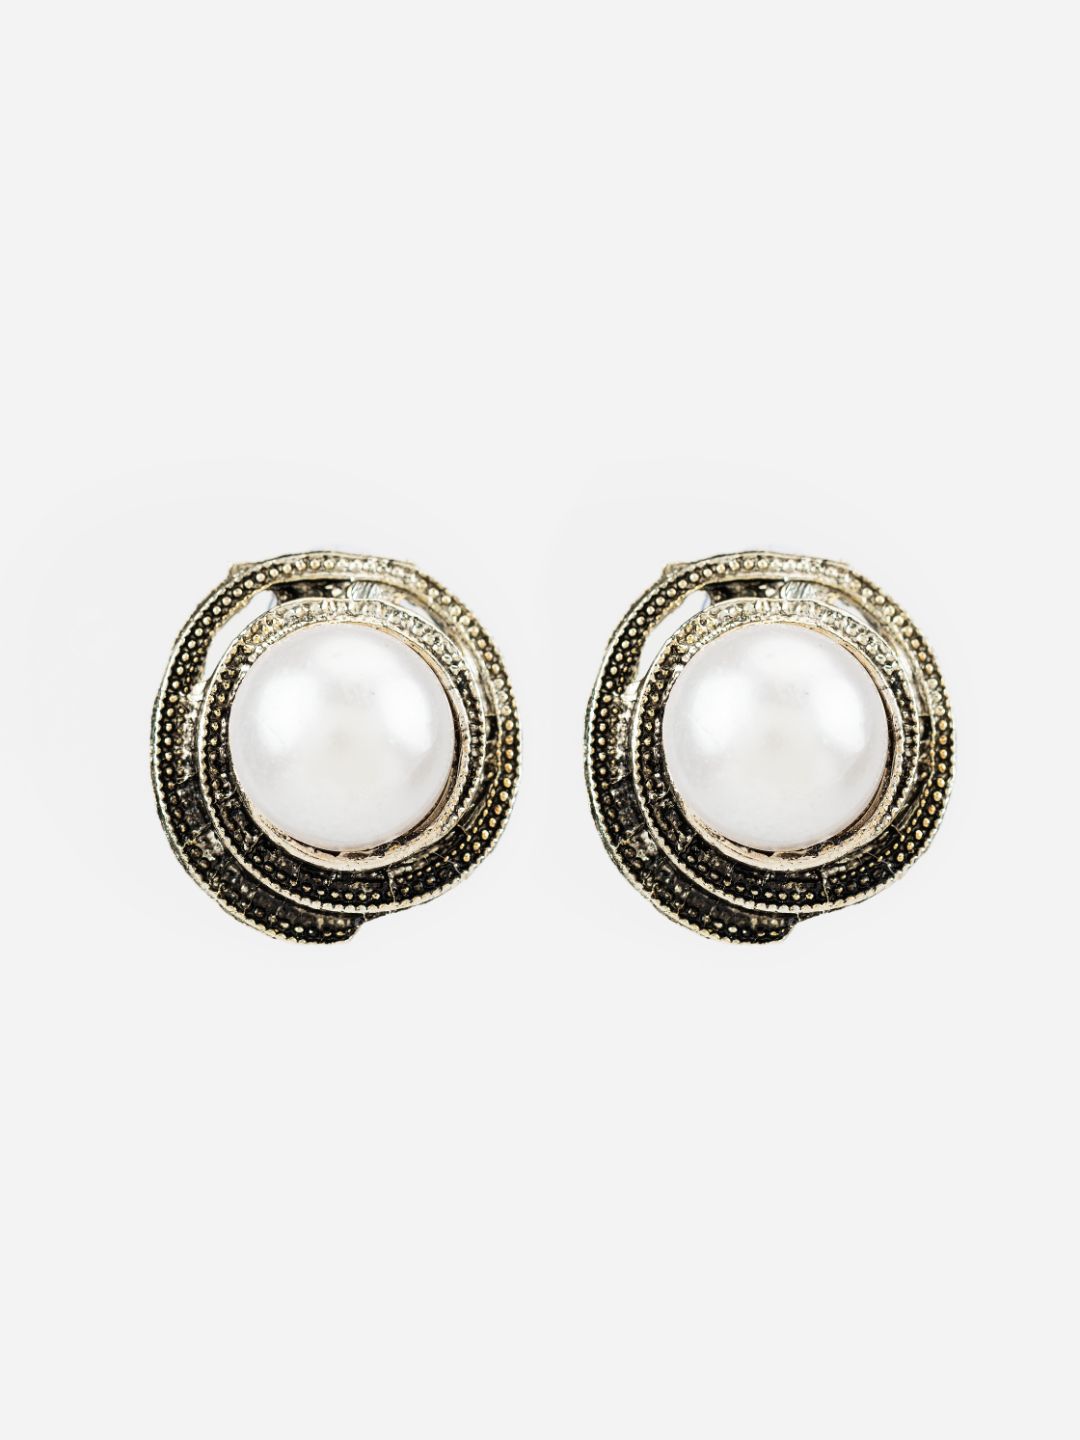 Embossed Floral Pearl Silver-Plated Stud Earrings